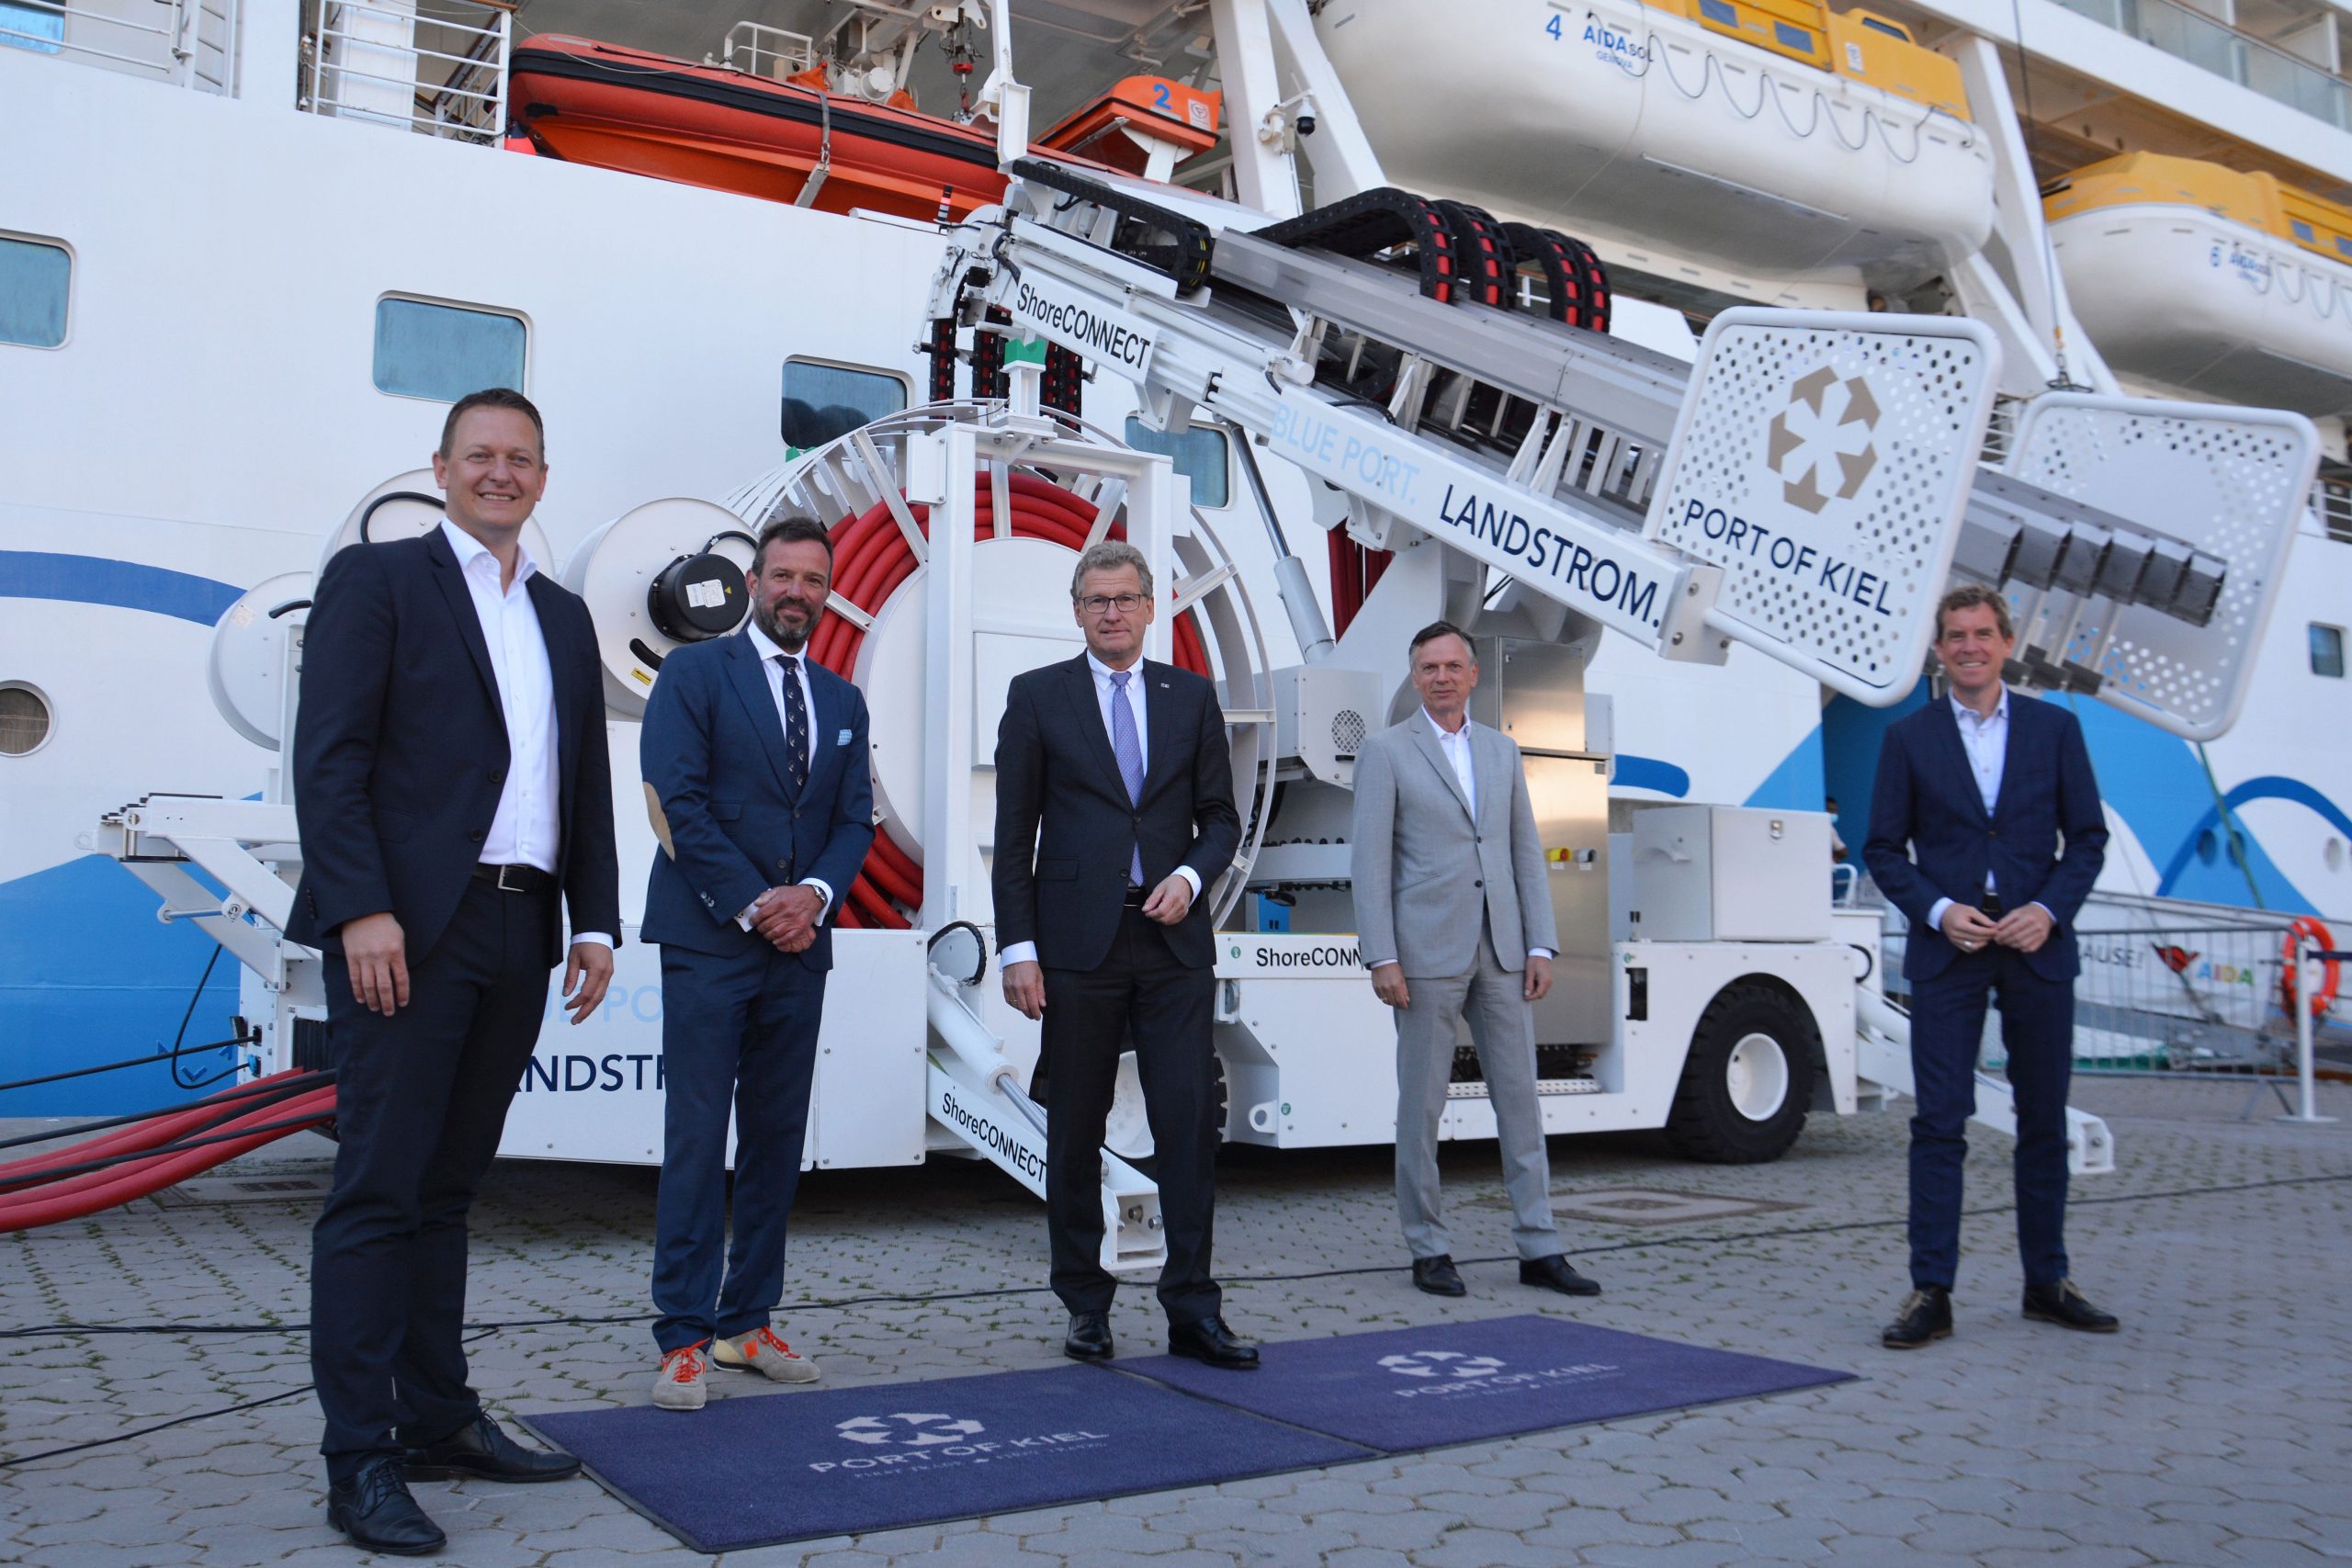 AIDA Cruises baut 2021 Landstromnutzung in deutschen Häfen aus